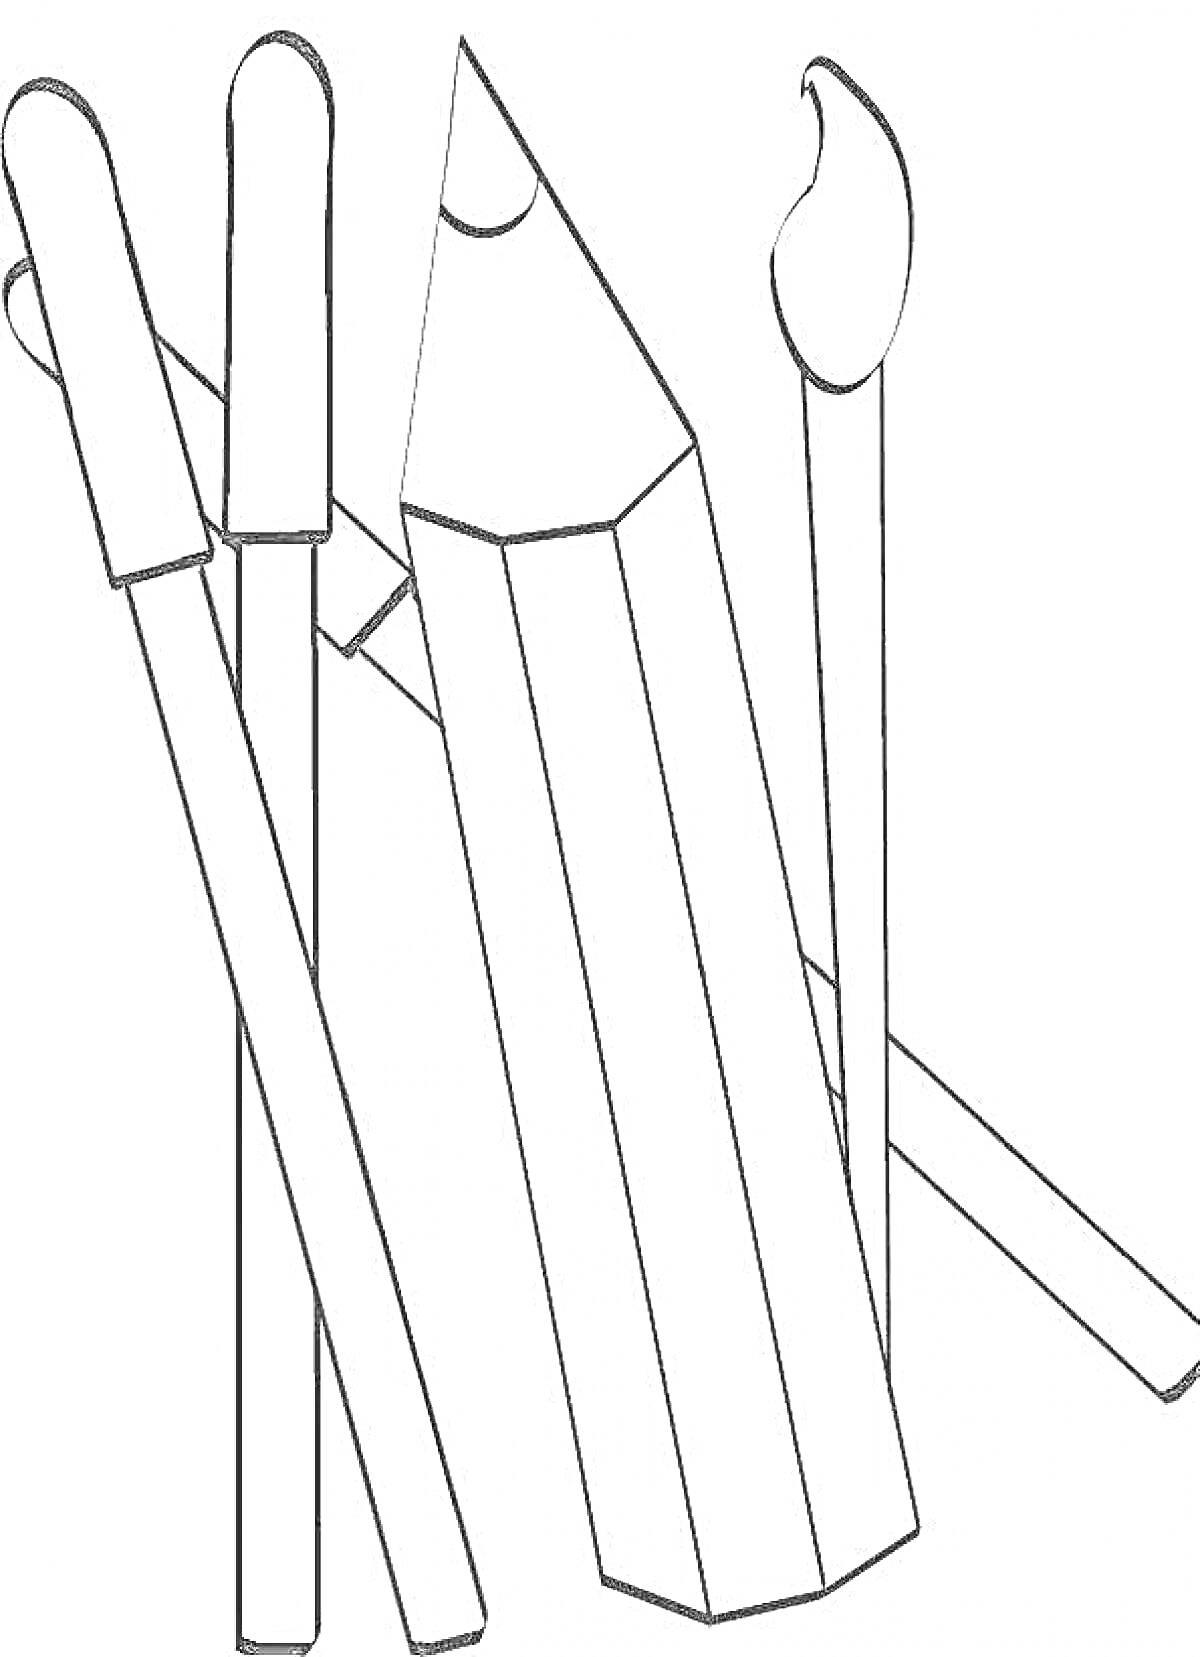 Раскраска Раскраска с двумя карандашами, двумя кистями и одной кисточкой